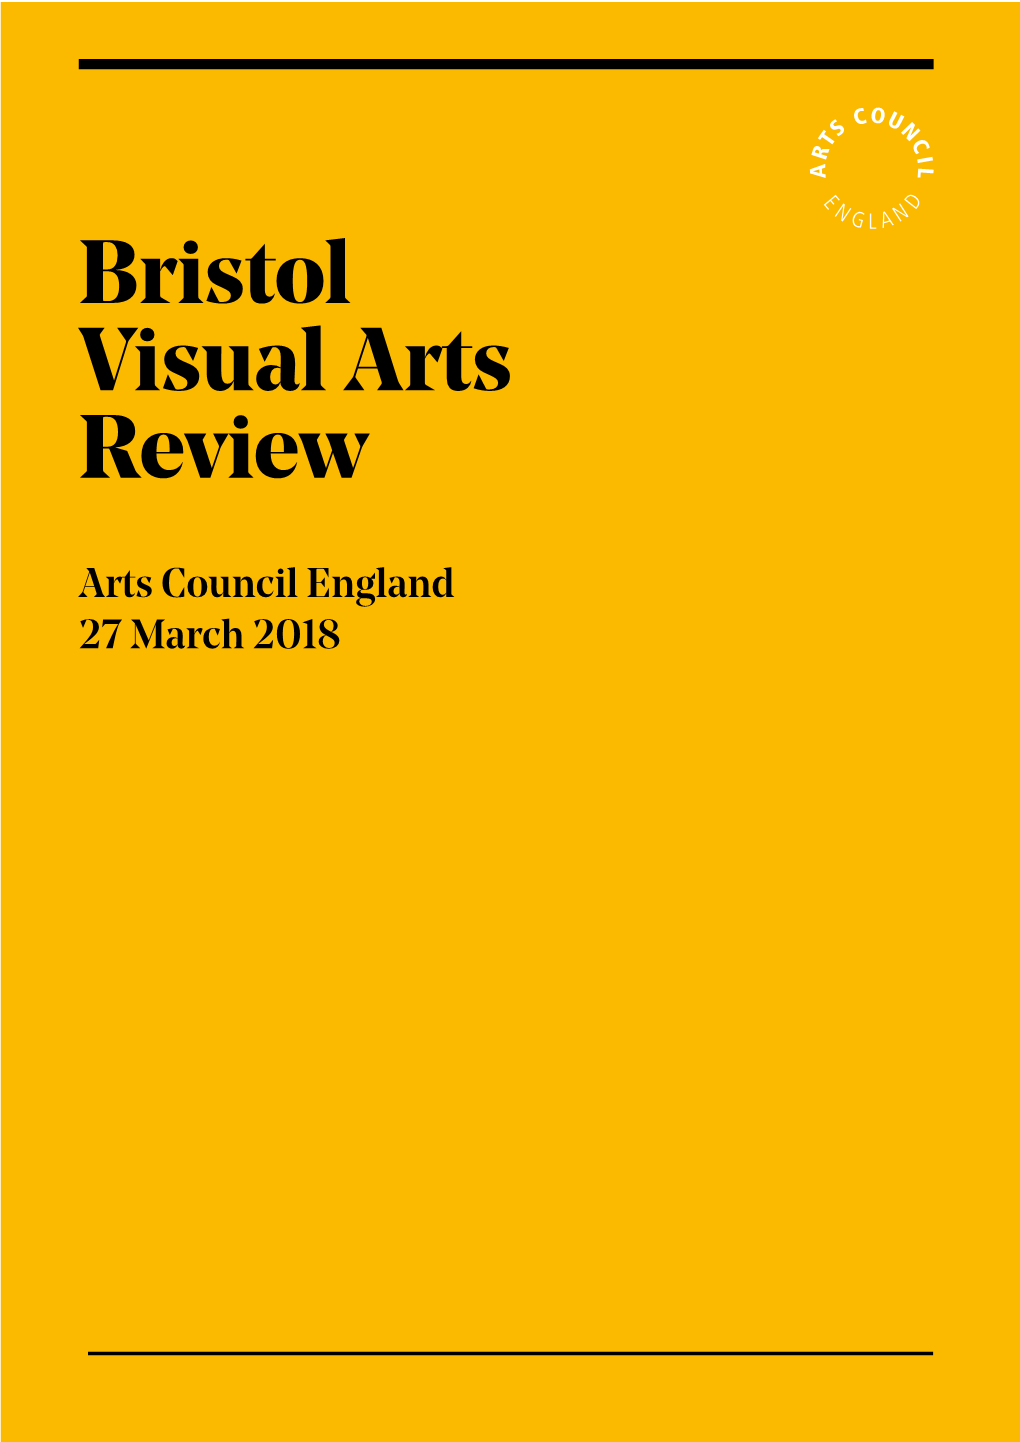 Bristol Visual Arts Review